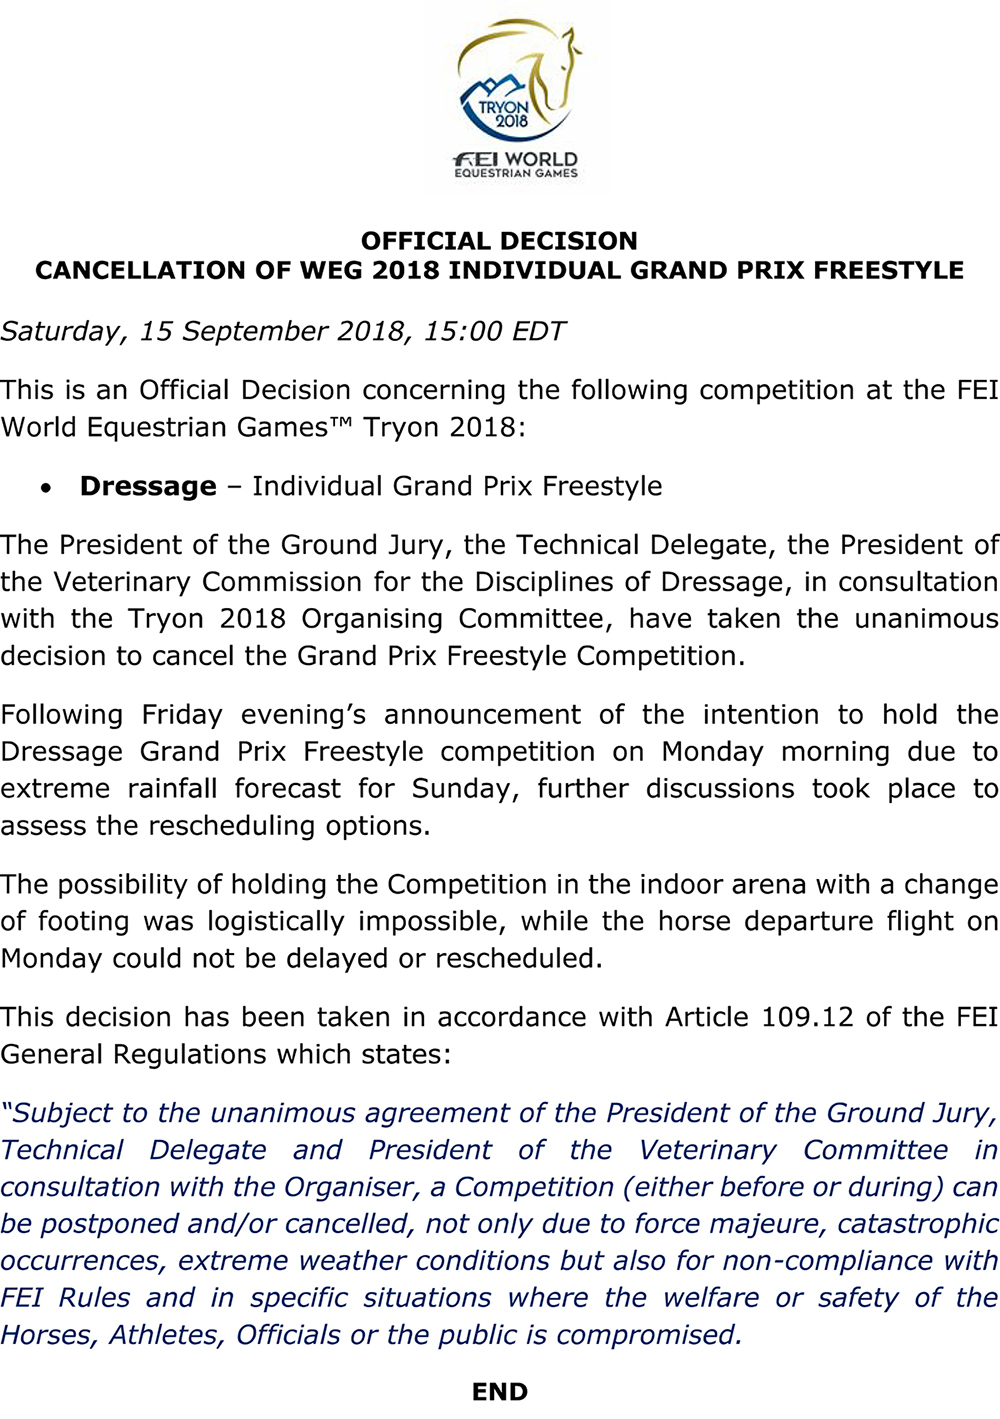 Cancelamento do GP Freestyle em Tryon2018